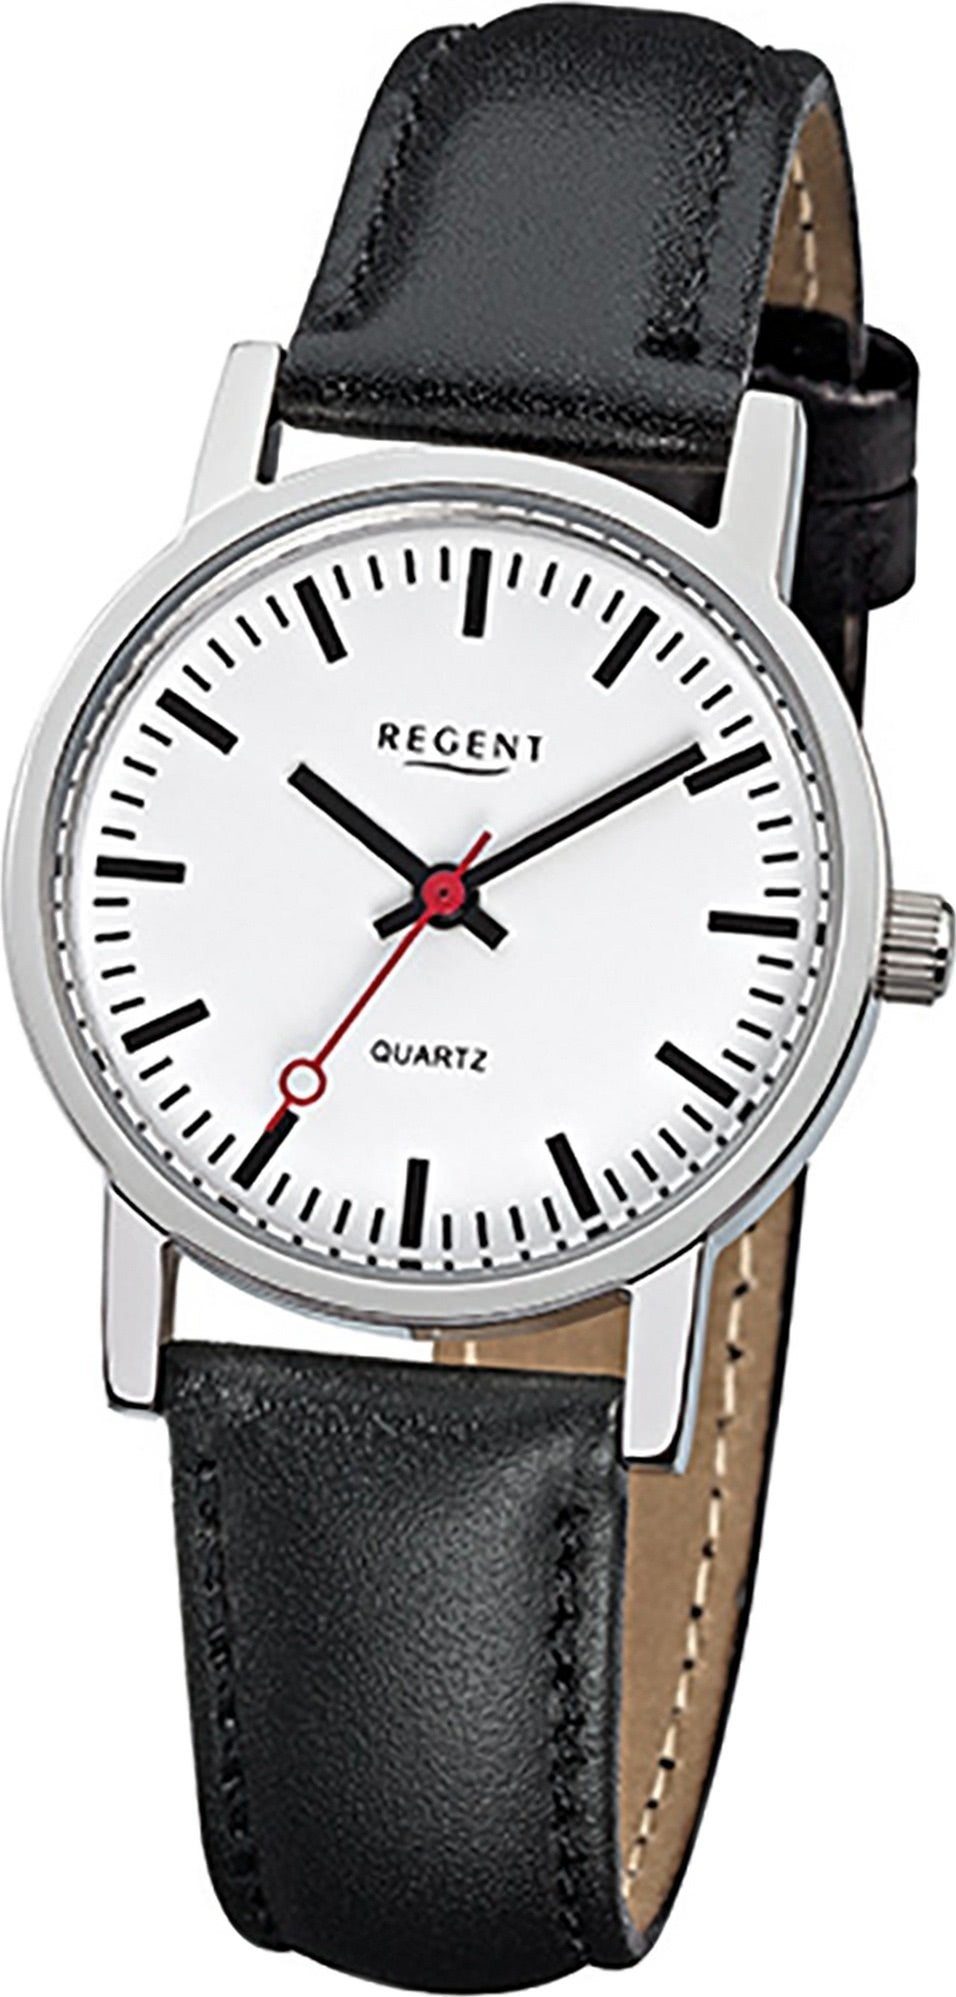 Regent Quarzuhr Regent Leder Damen Uhr F-824 Quarzuhr, Damenuhr Lederarmband schwarz, rundes Gehäuse, klein (ca. 27mm)